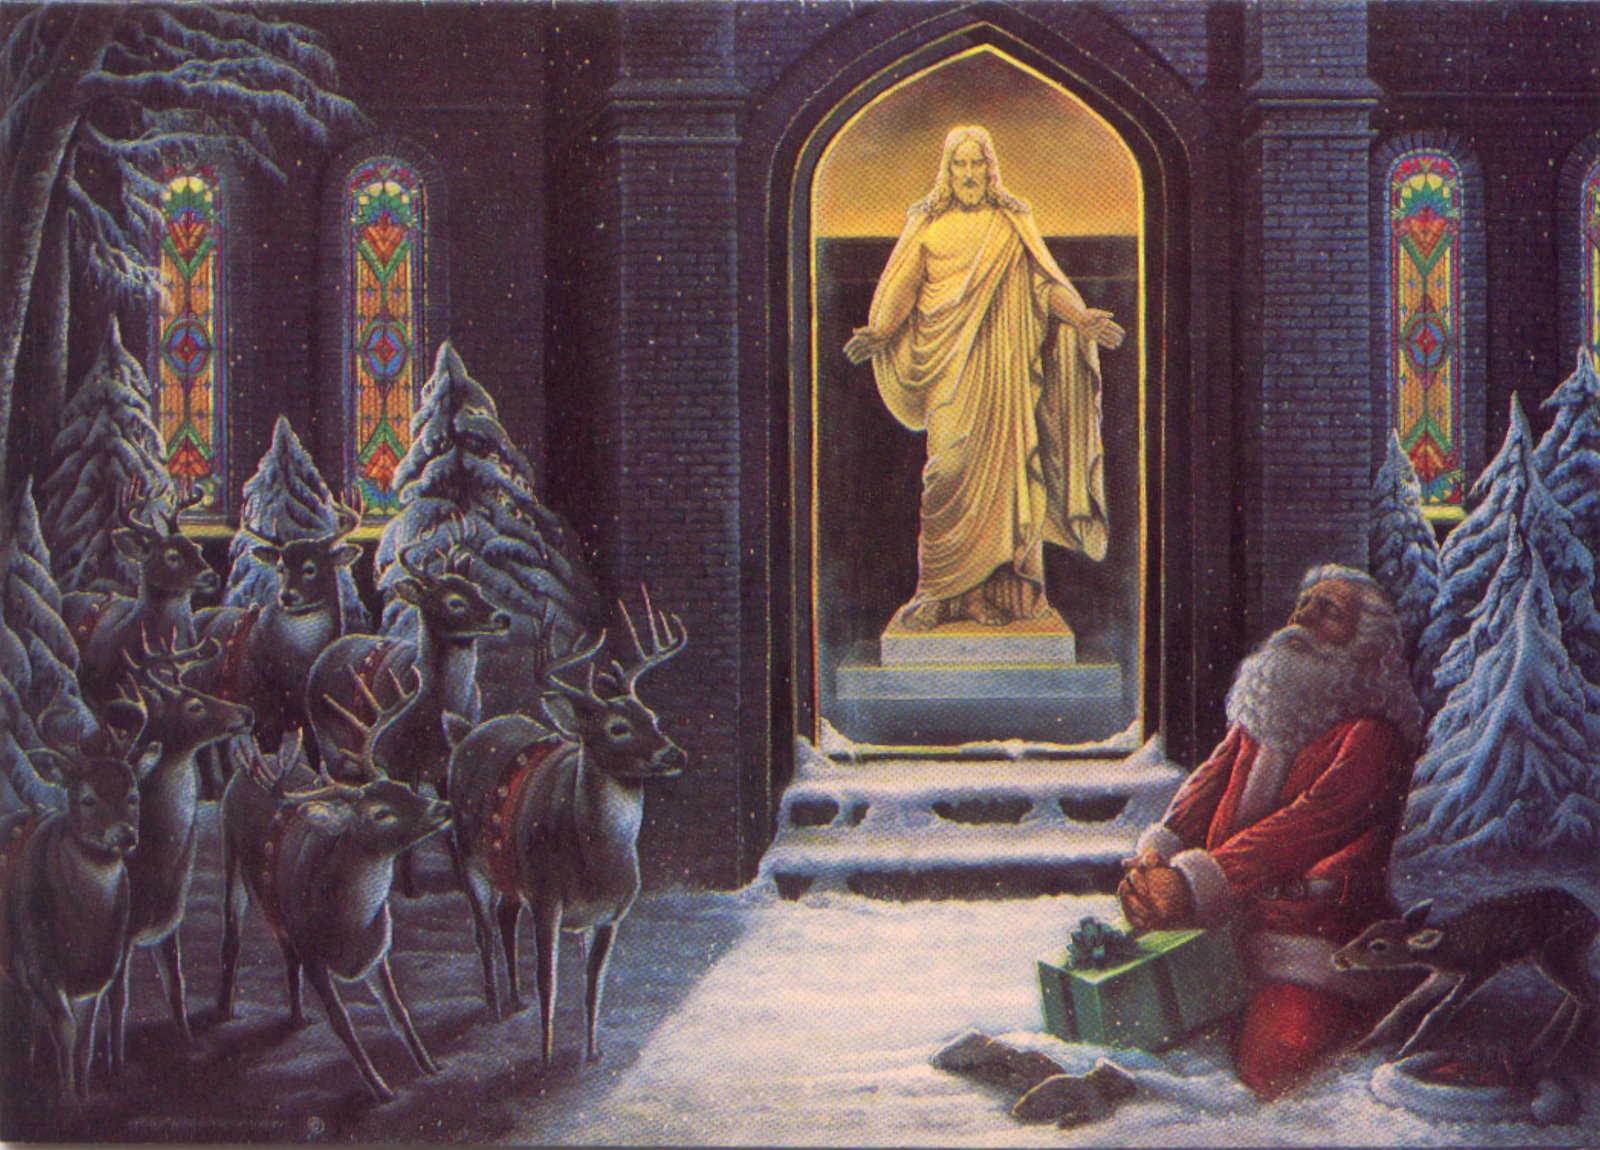 [Santa+Praying+picture.jpg]